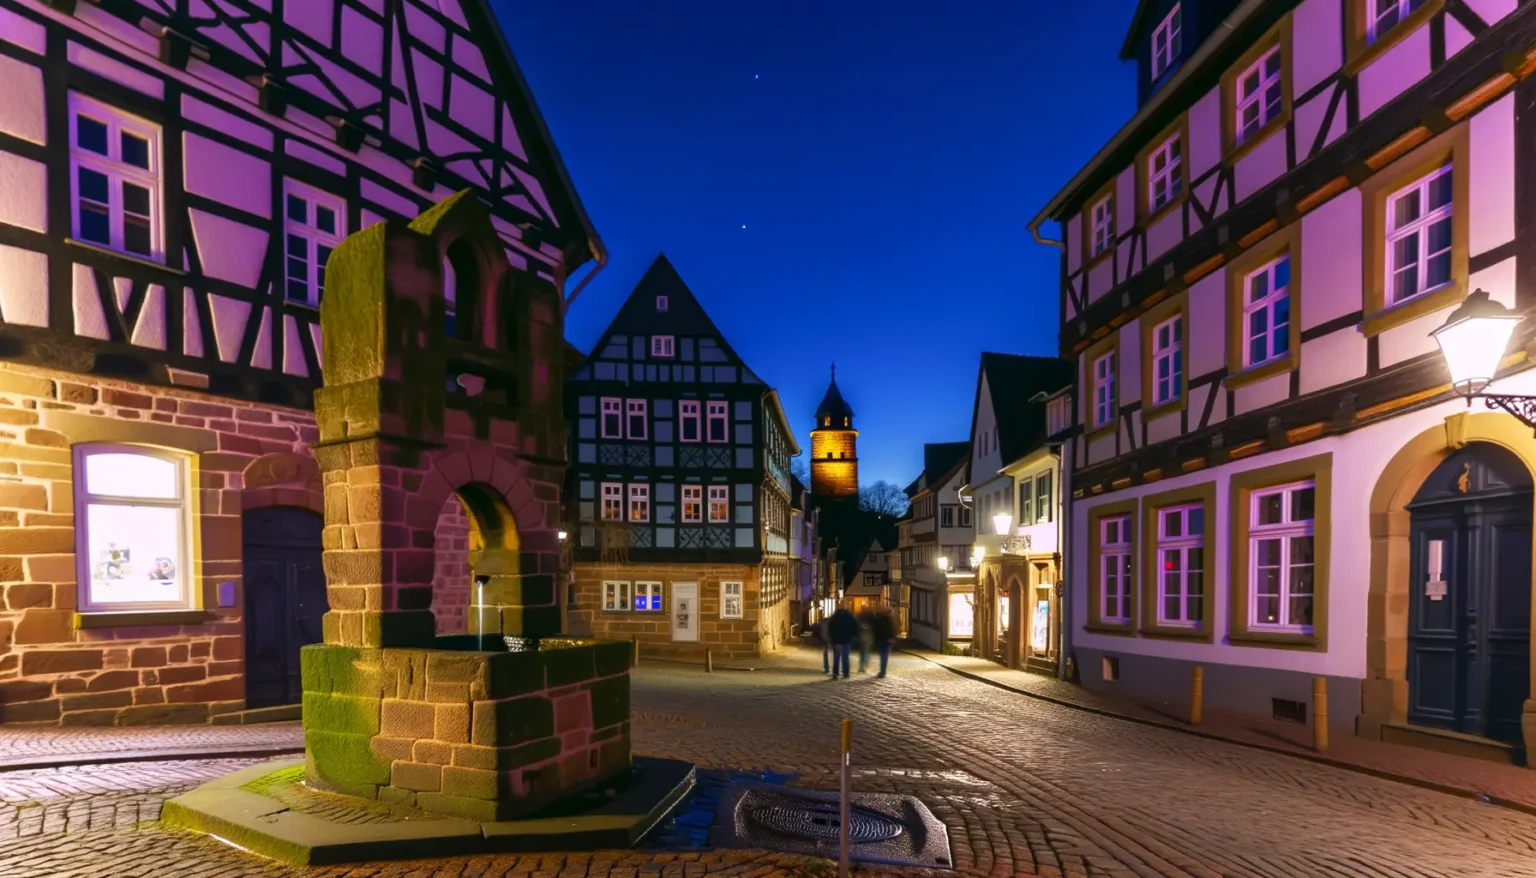 Historische europäische Altstadtgasse bei Nacht mit traditionellen Fachwerkhäusern, gepflasterten Straßen, einem Springbrunnen im Vordergrund und erleuchteten Straßenlaternen. Ein beleuchteter Turm steht im Hintergrund gegen einen blauen Abendhimmel mit sichtbaren Sternen.